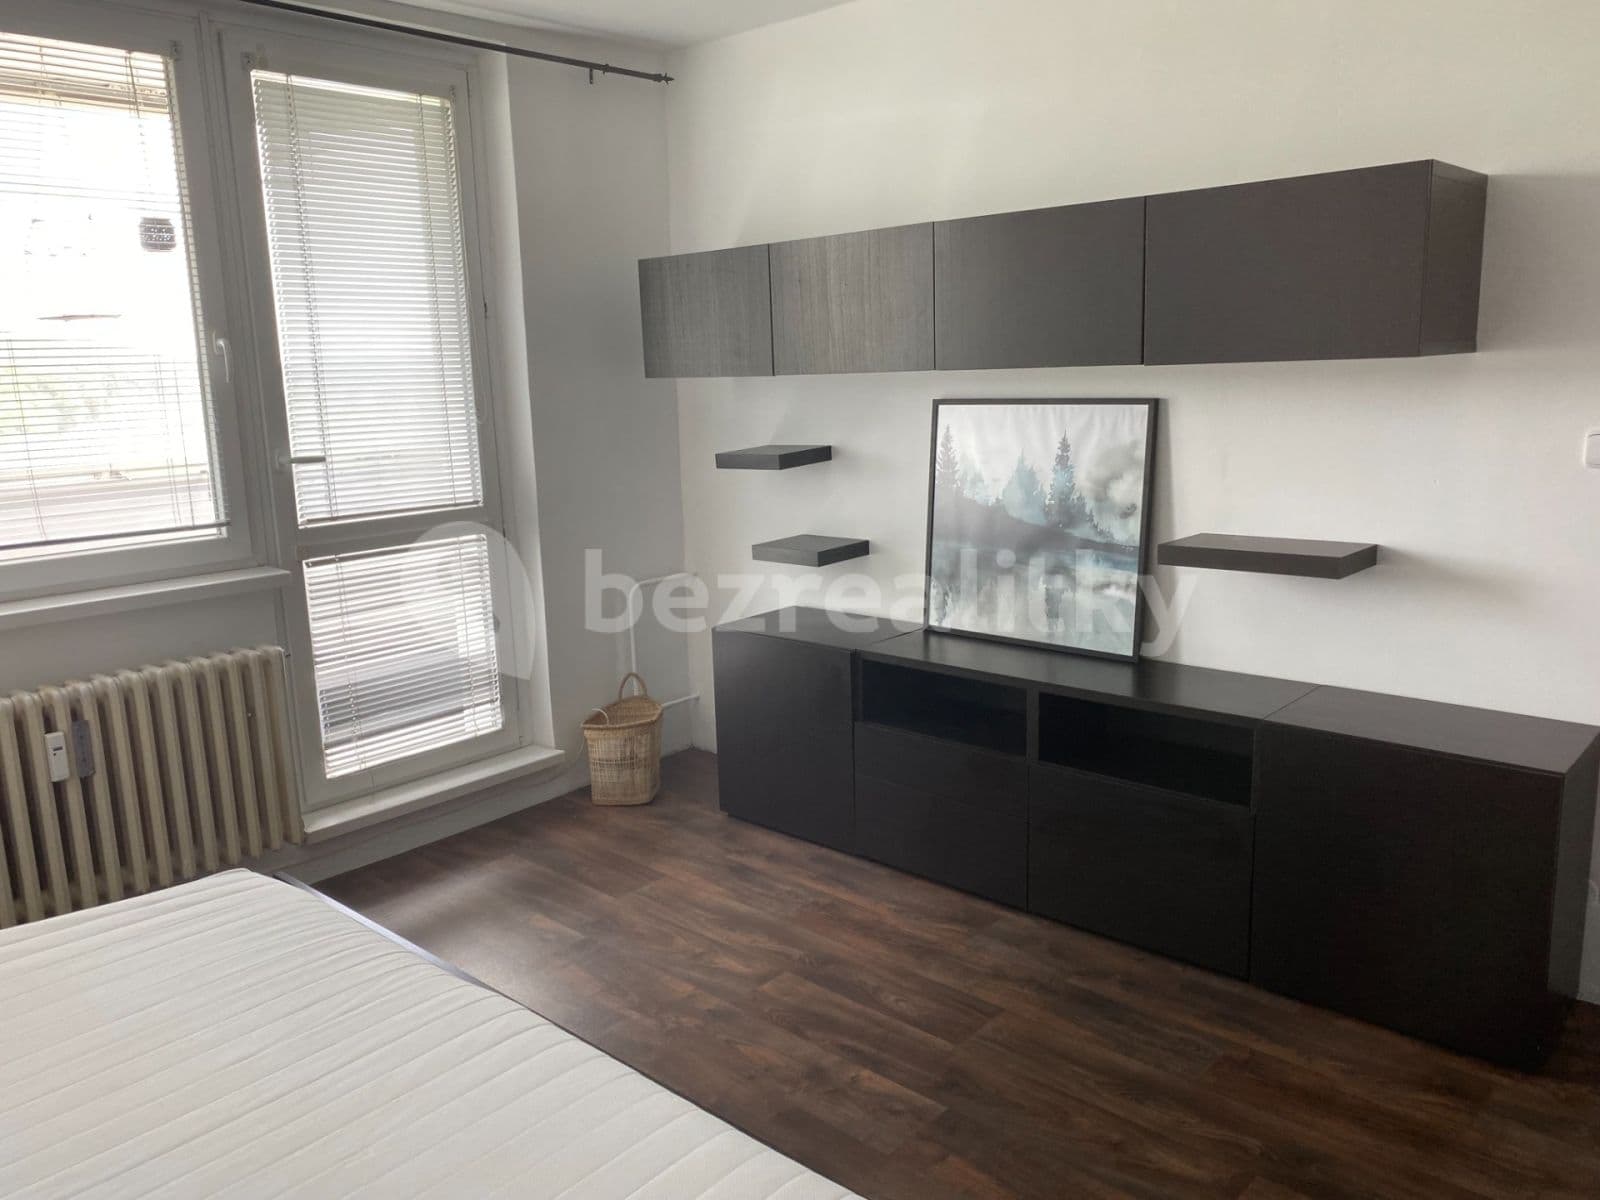 1 bedroom flat to rent, 35 m², Květnická, Tišnov, Jihomoravský Region